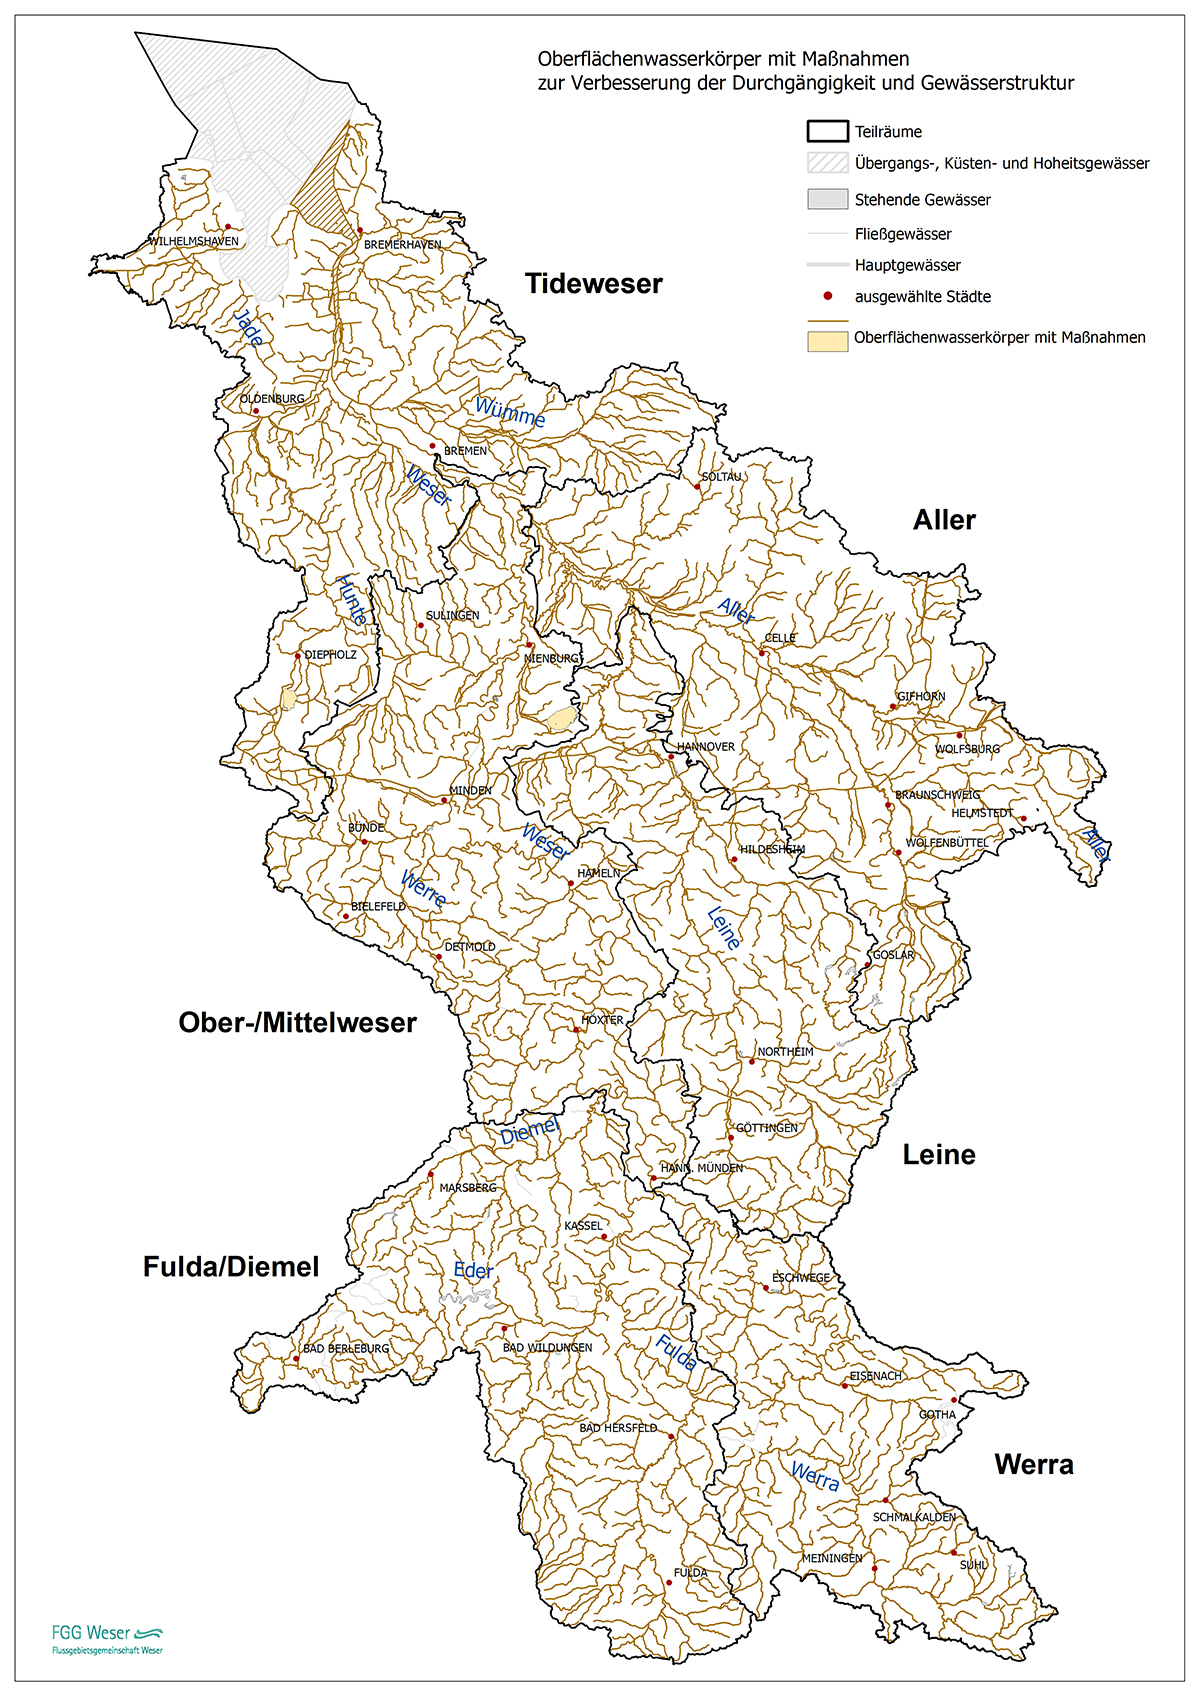 Maßnahmenprogramm Oberflächengewässer (FGG Weser, 2021)